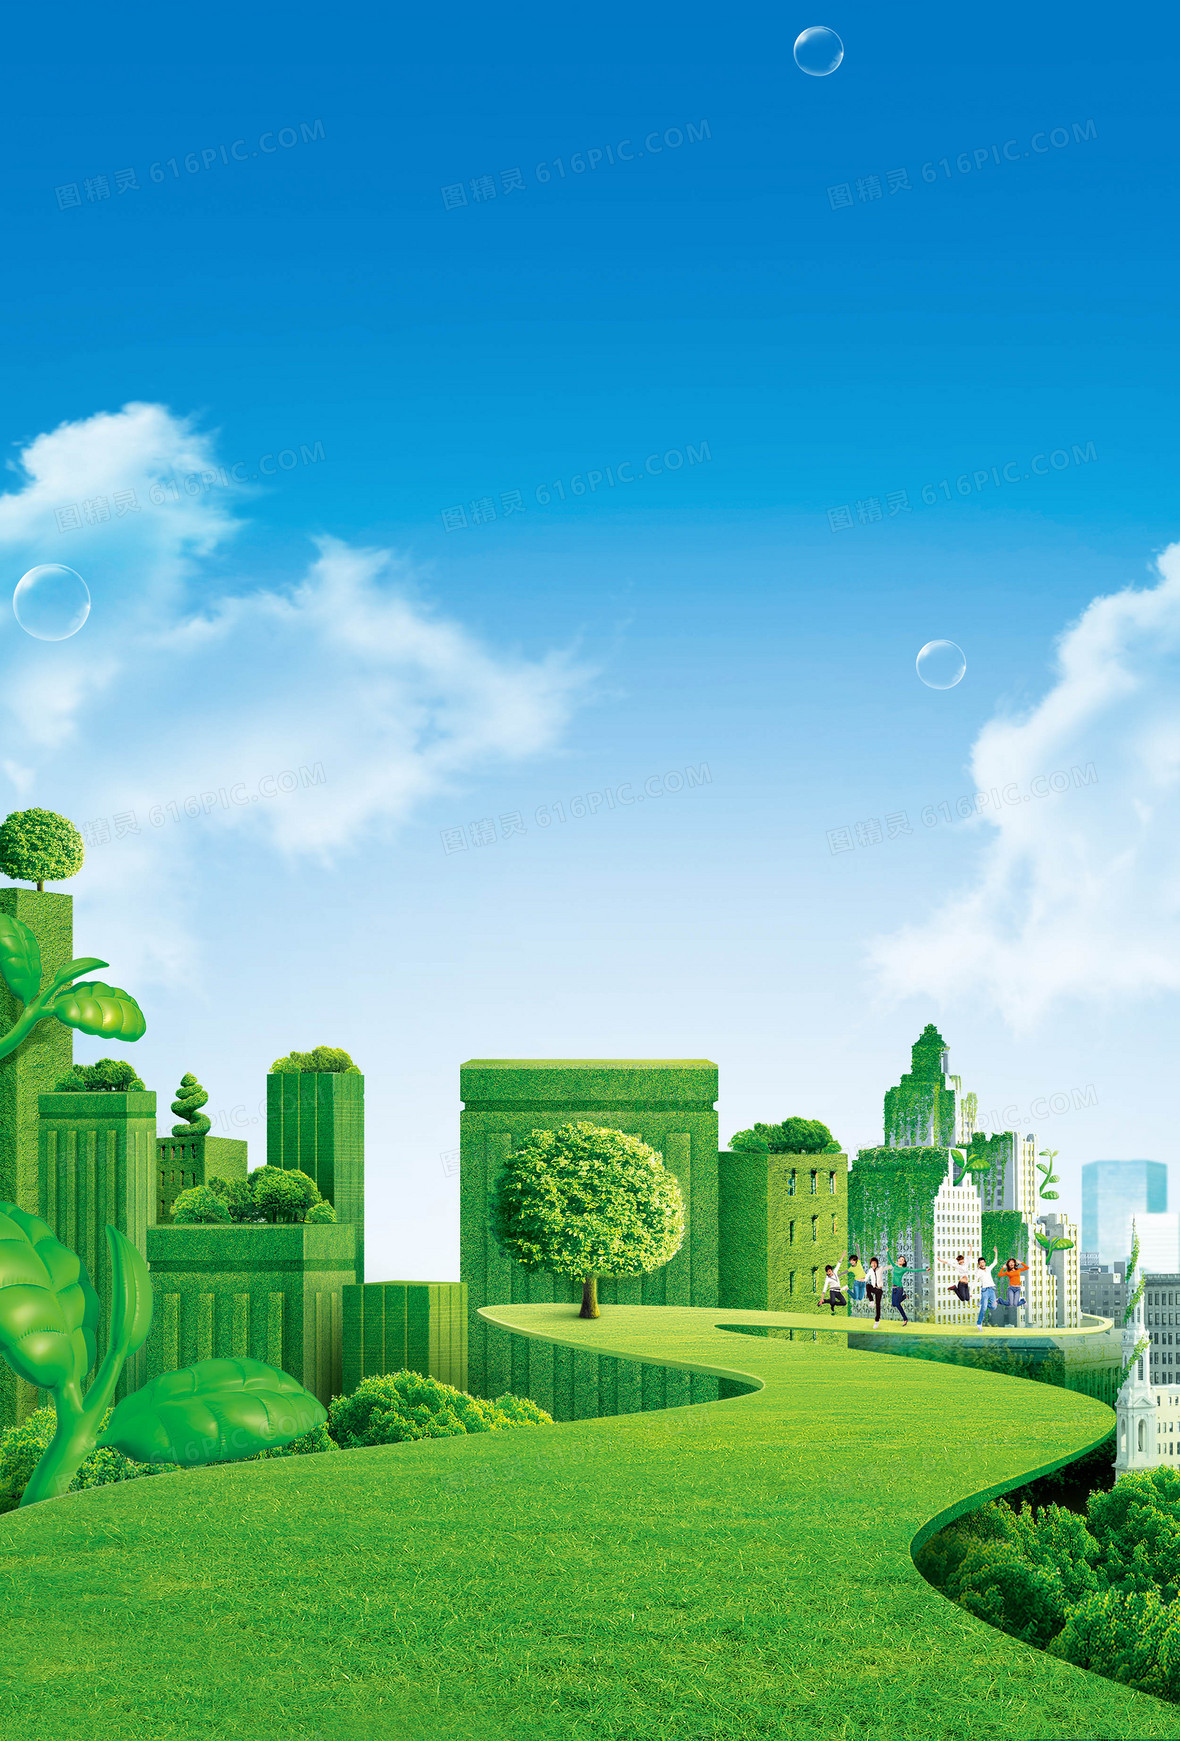 关键词:              绿化环保城市建筑